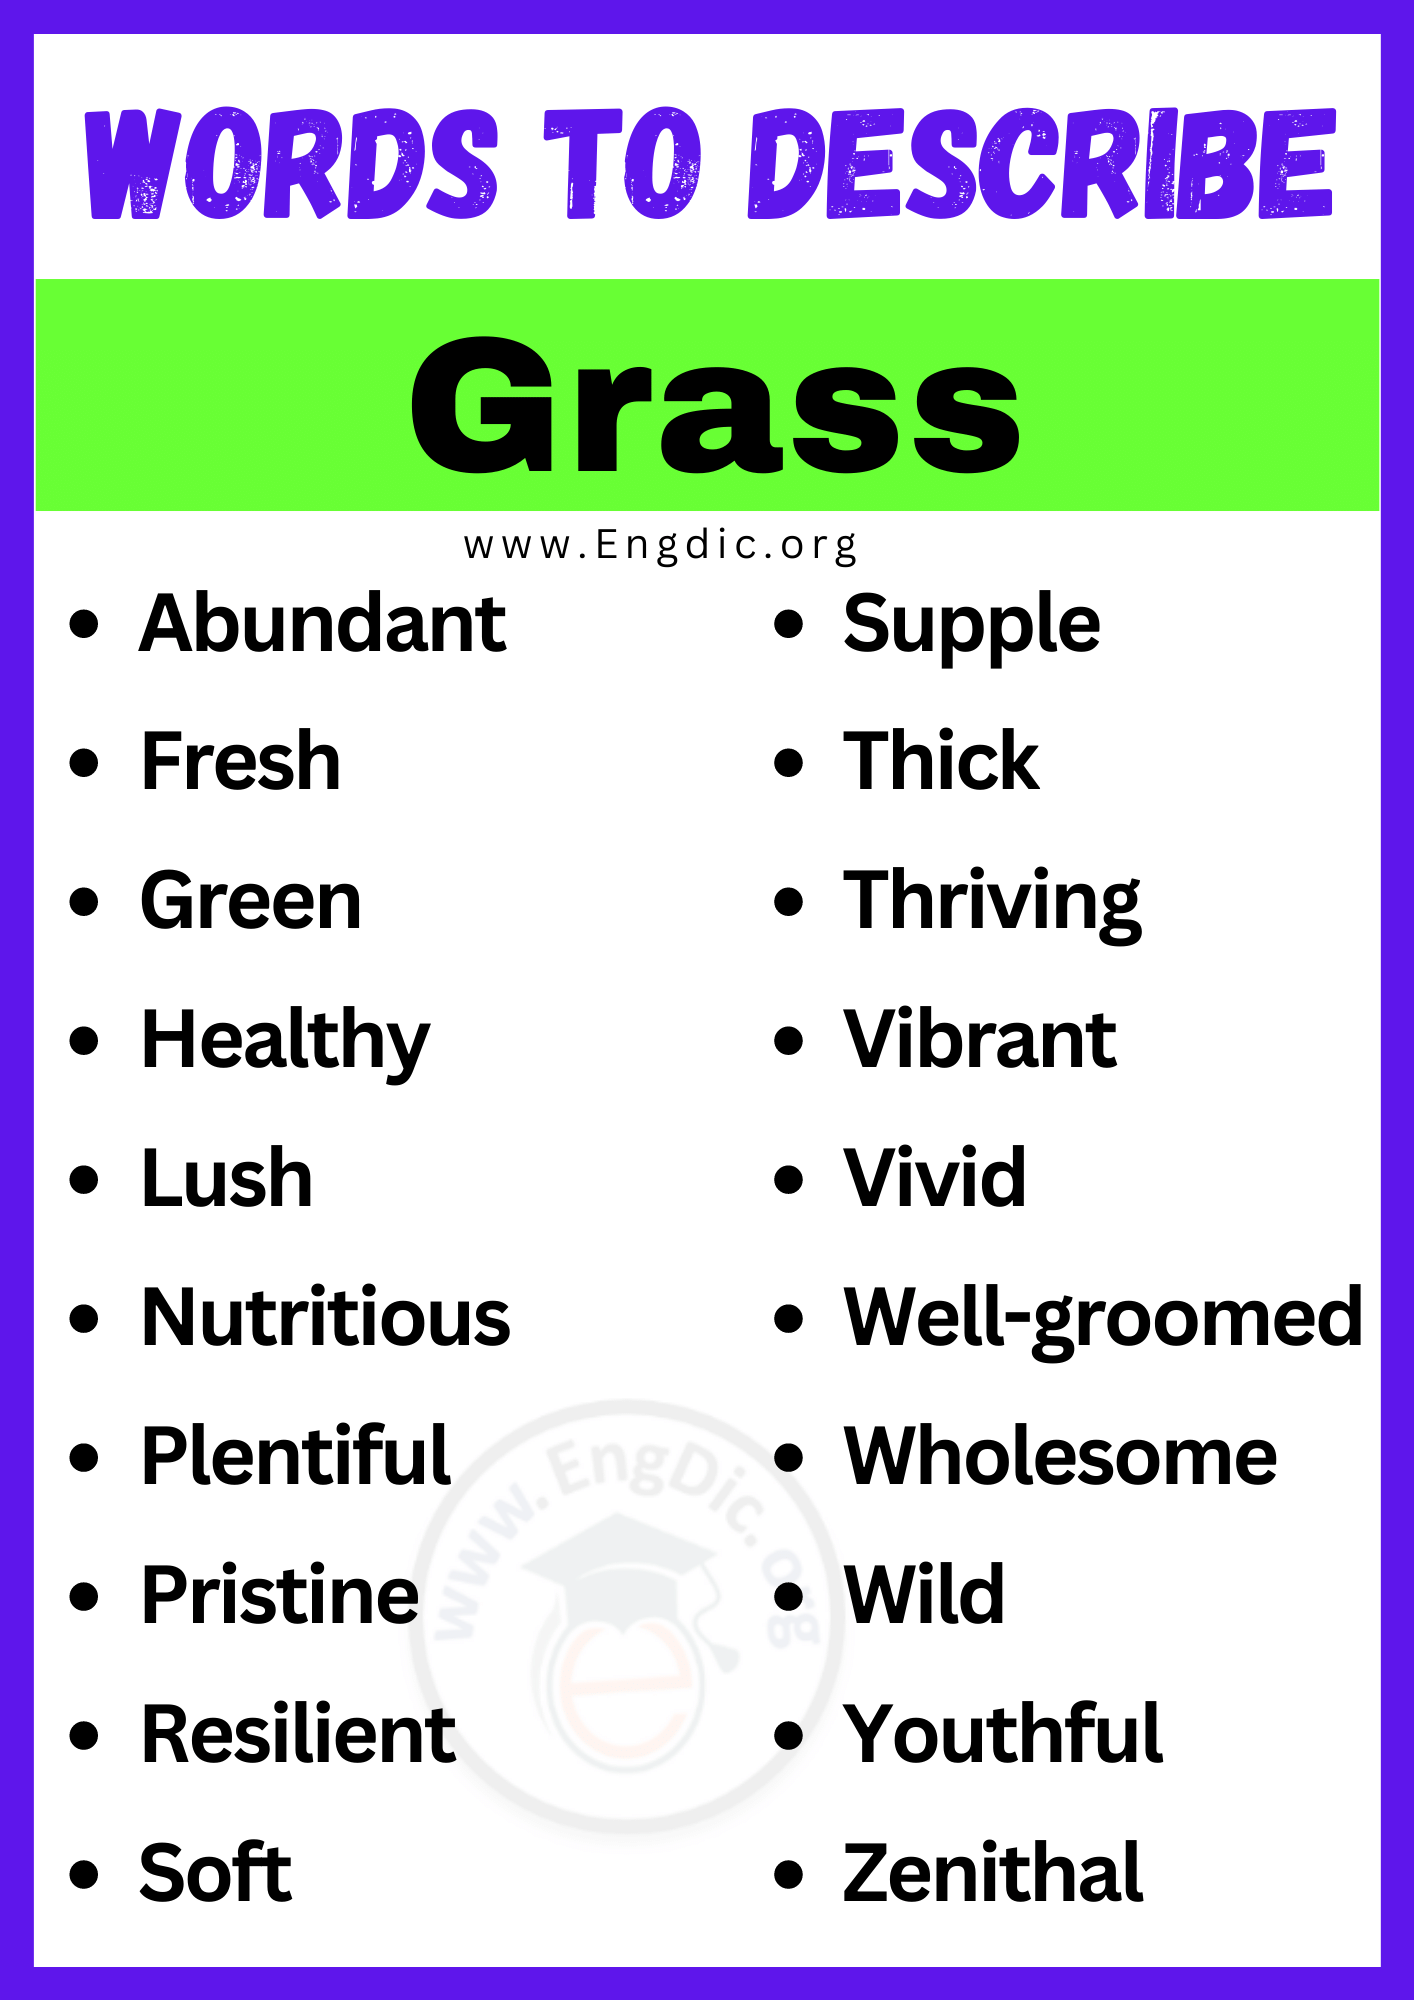 Words to Describe Grass